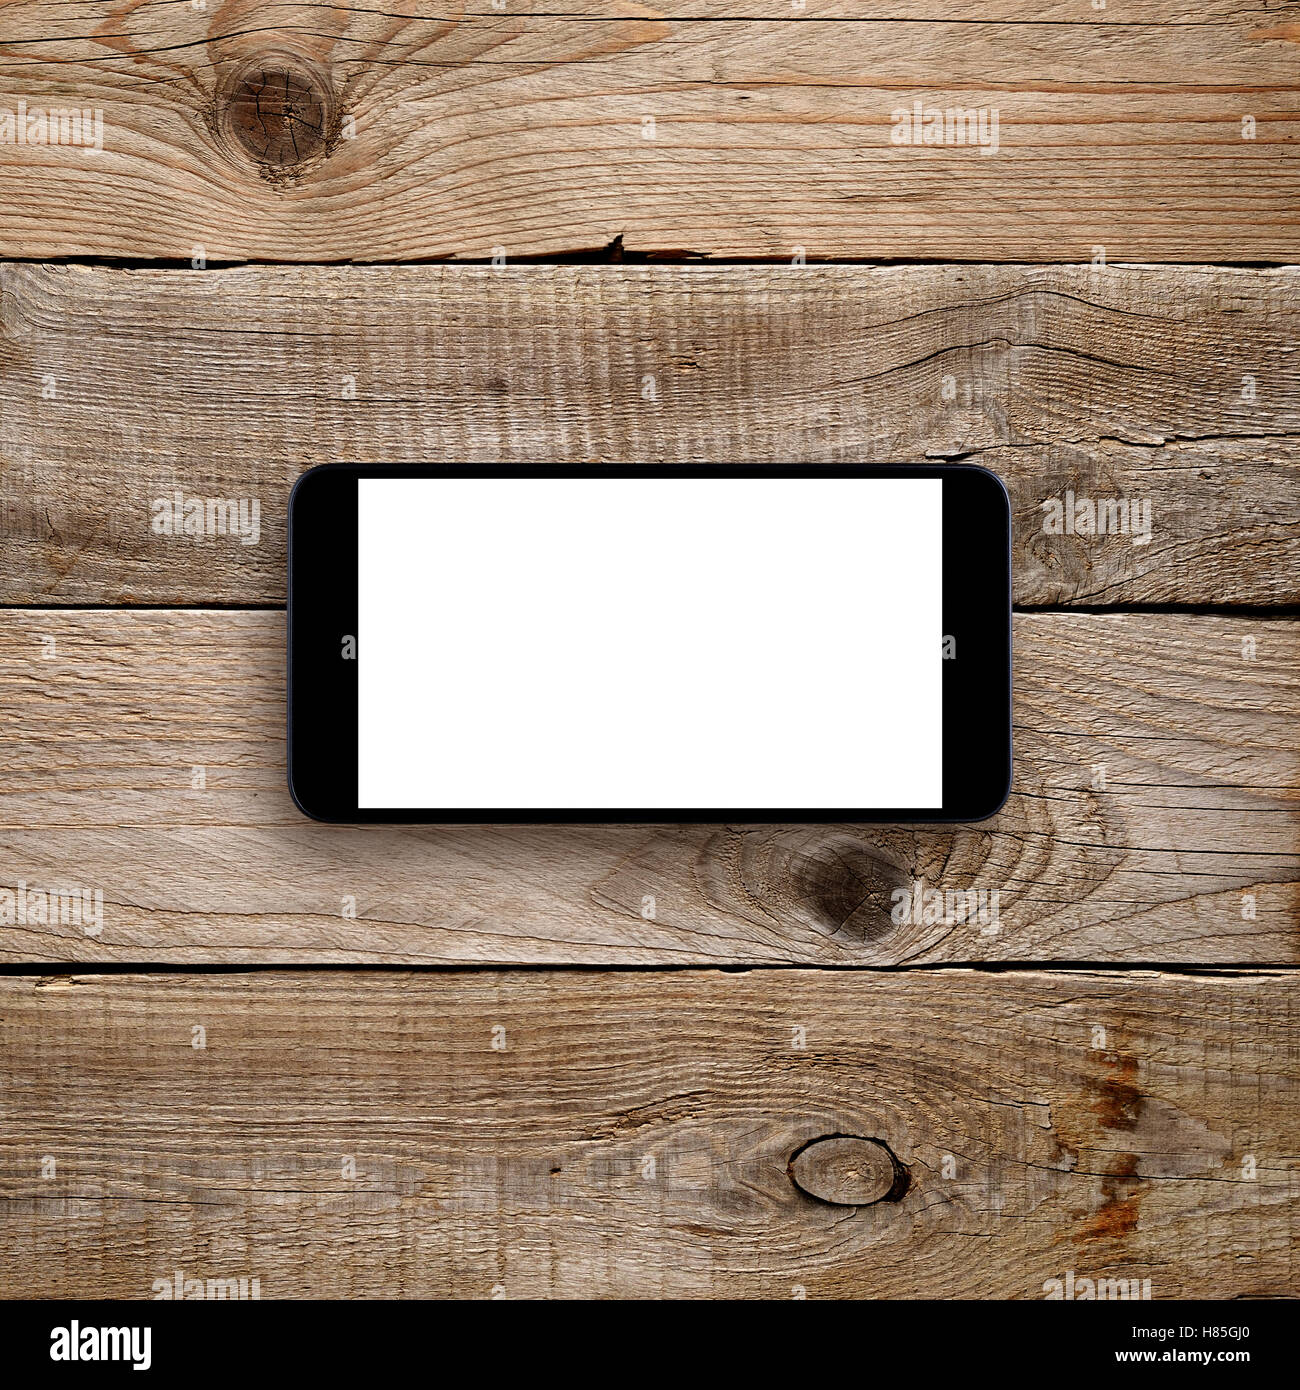 Smartphone mit leeren Bildschirm auf hölzernen Hintergrund. Horizontale Ansicht Stockfoto